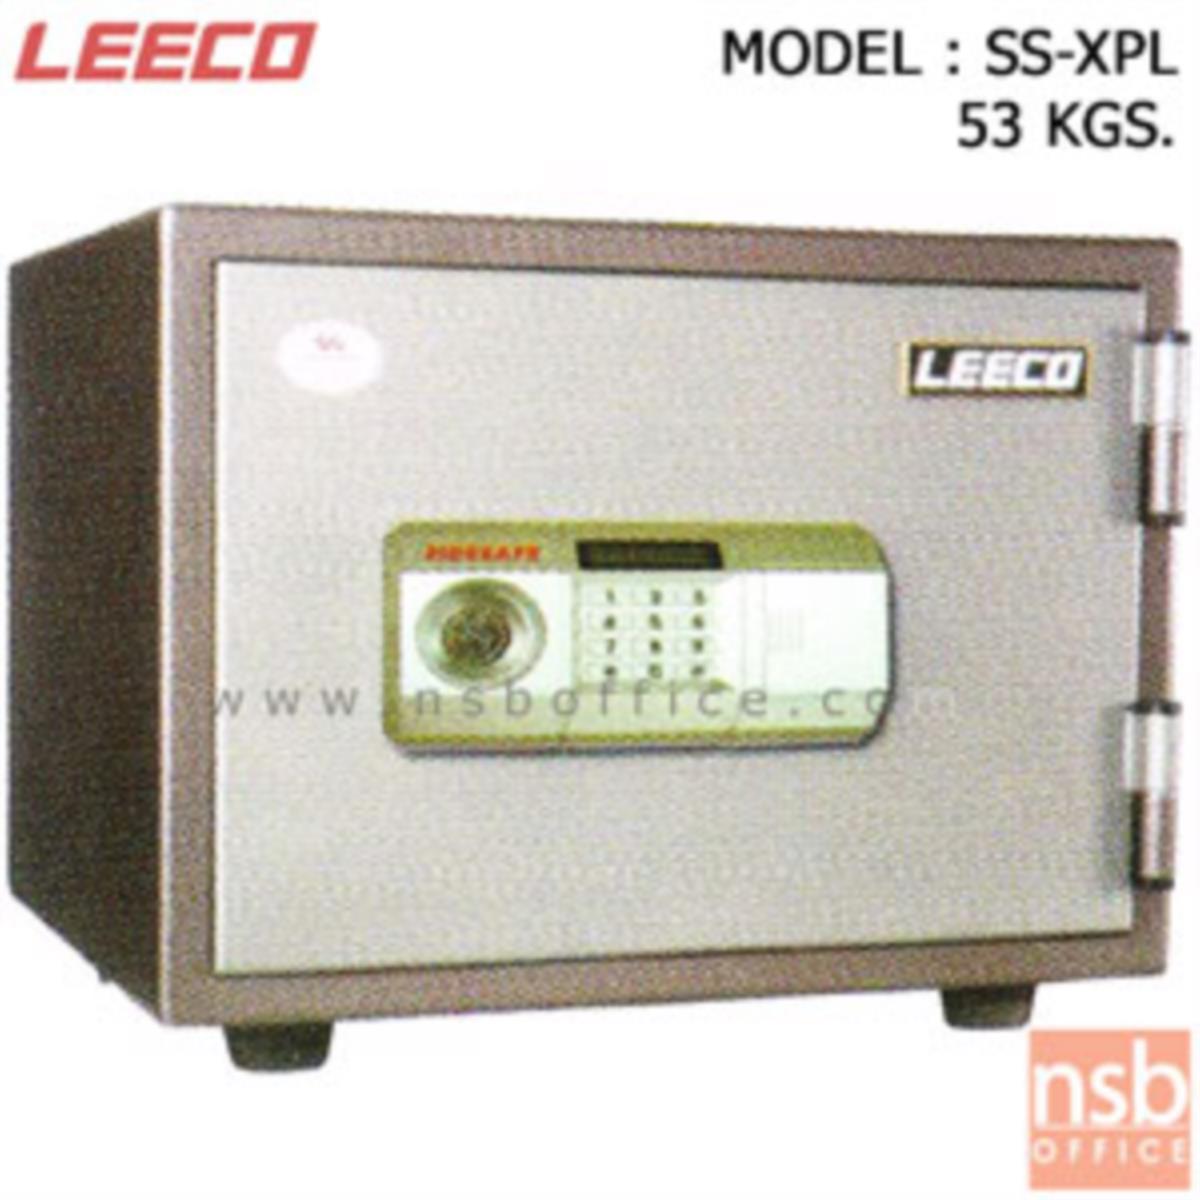 ตู้เซฟดิจิตอล 53 กก. (1 รหัสกด / 1 ปุ่มหมุนบิด) LEECO SS-XPL   